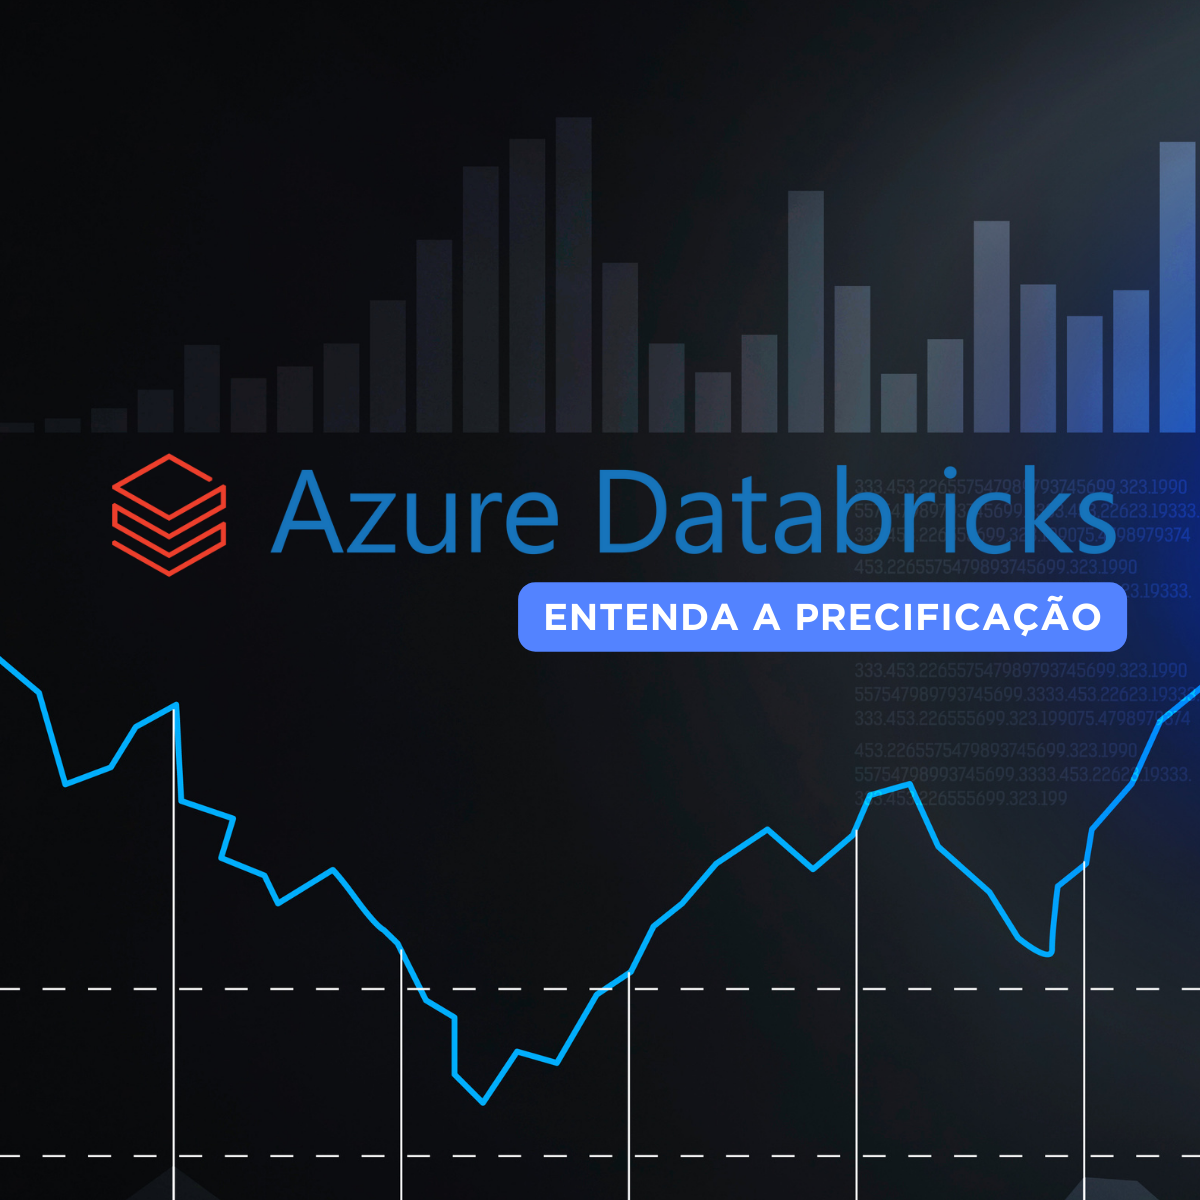 Precificação Azure Databricks: Pay-as-You-Go vs. Pre-Purchased DBUs